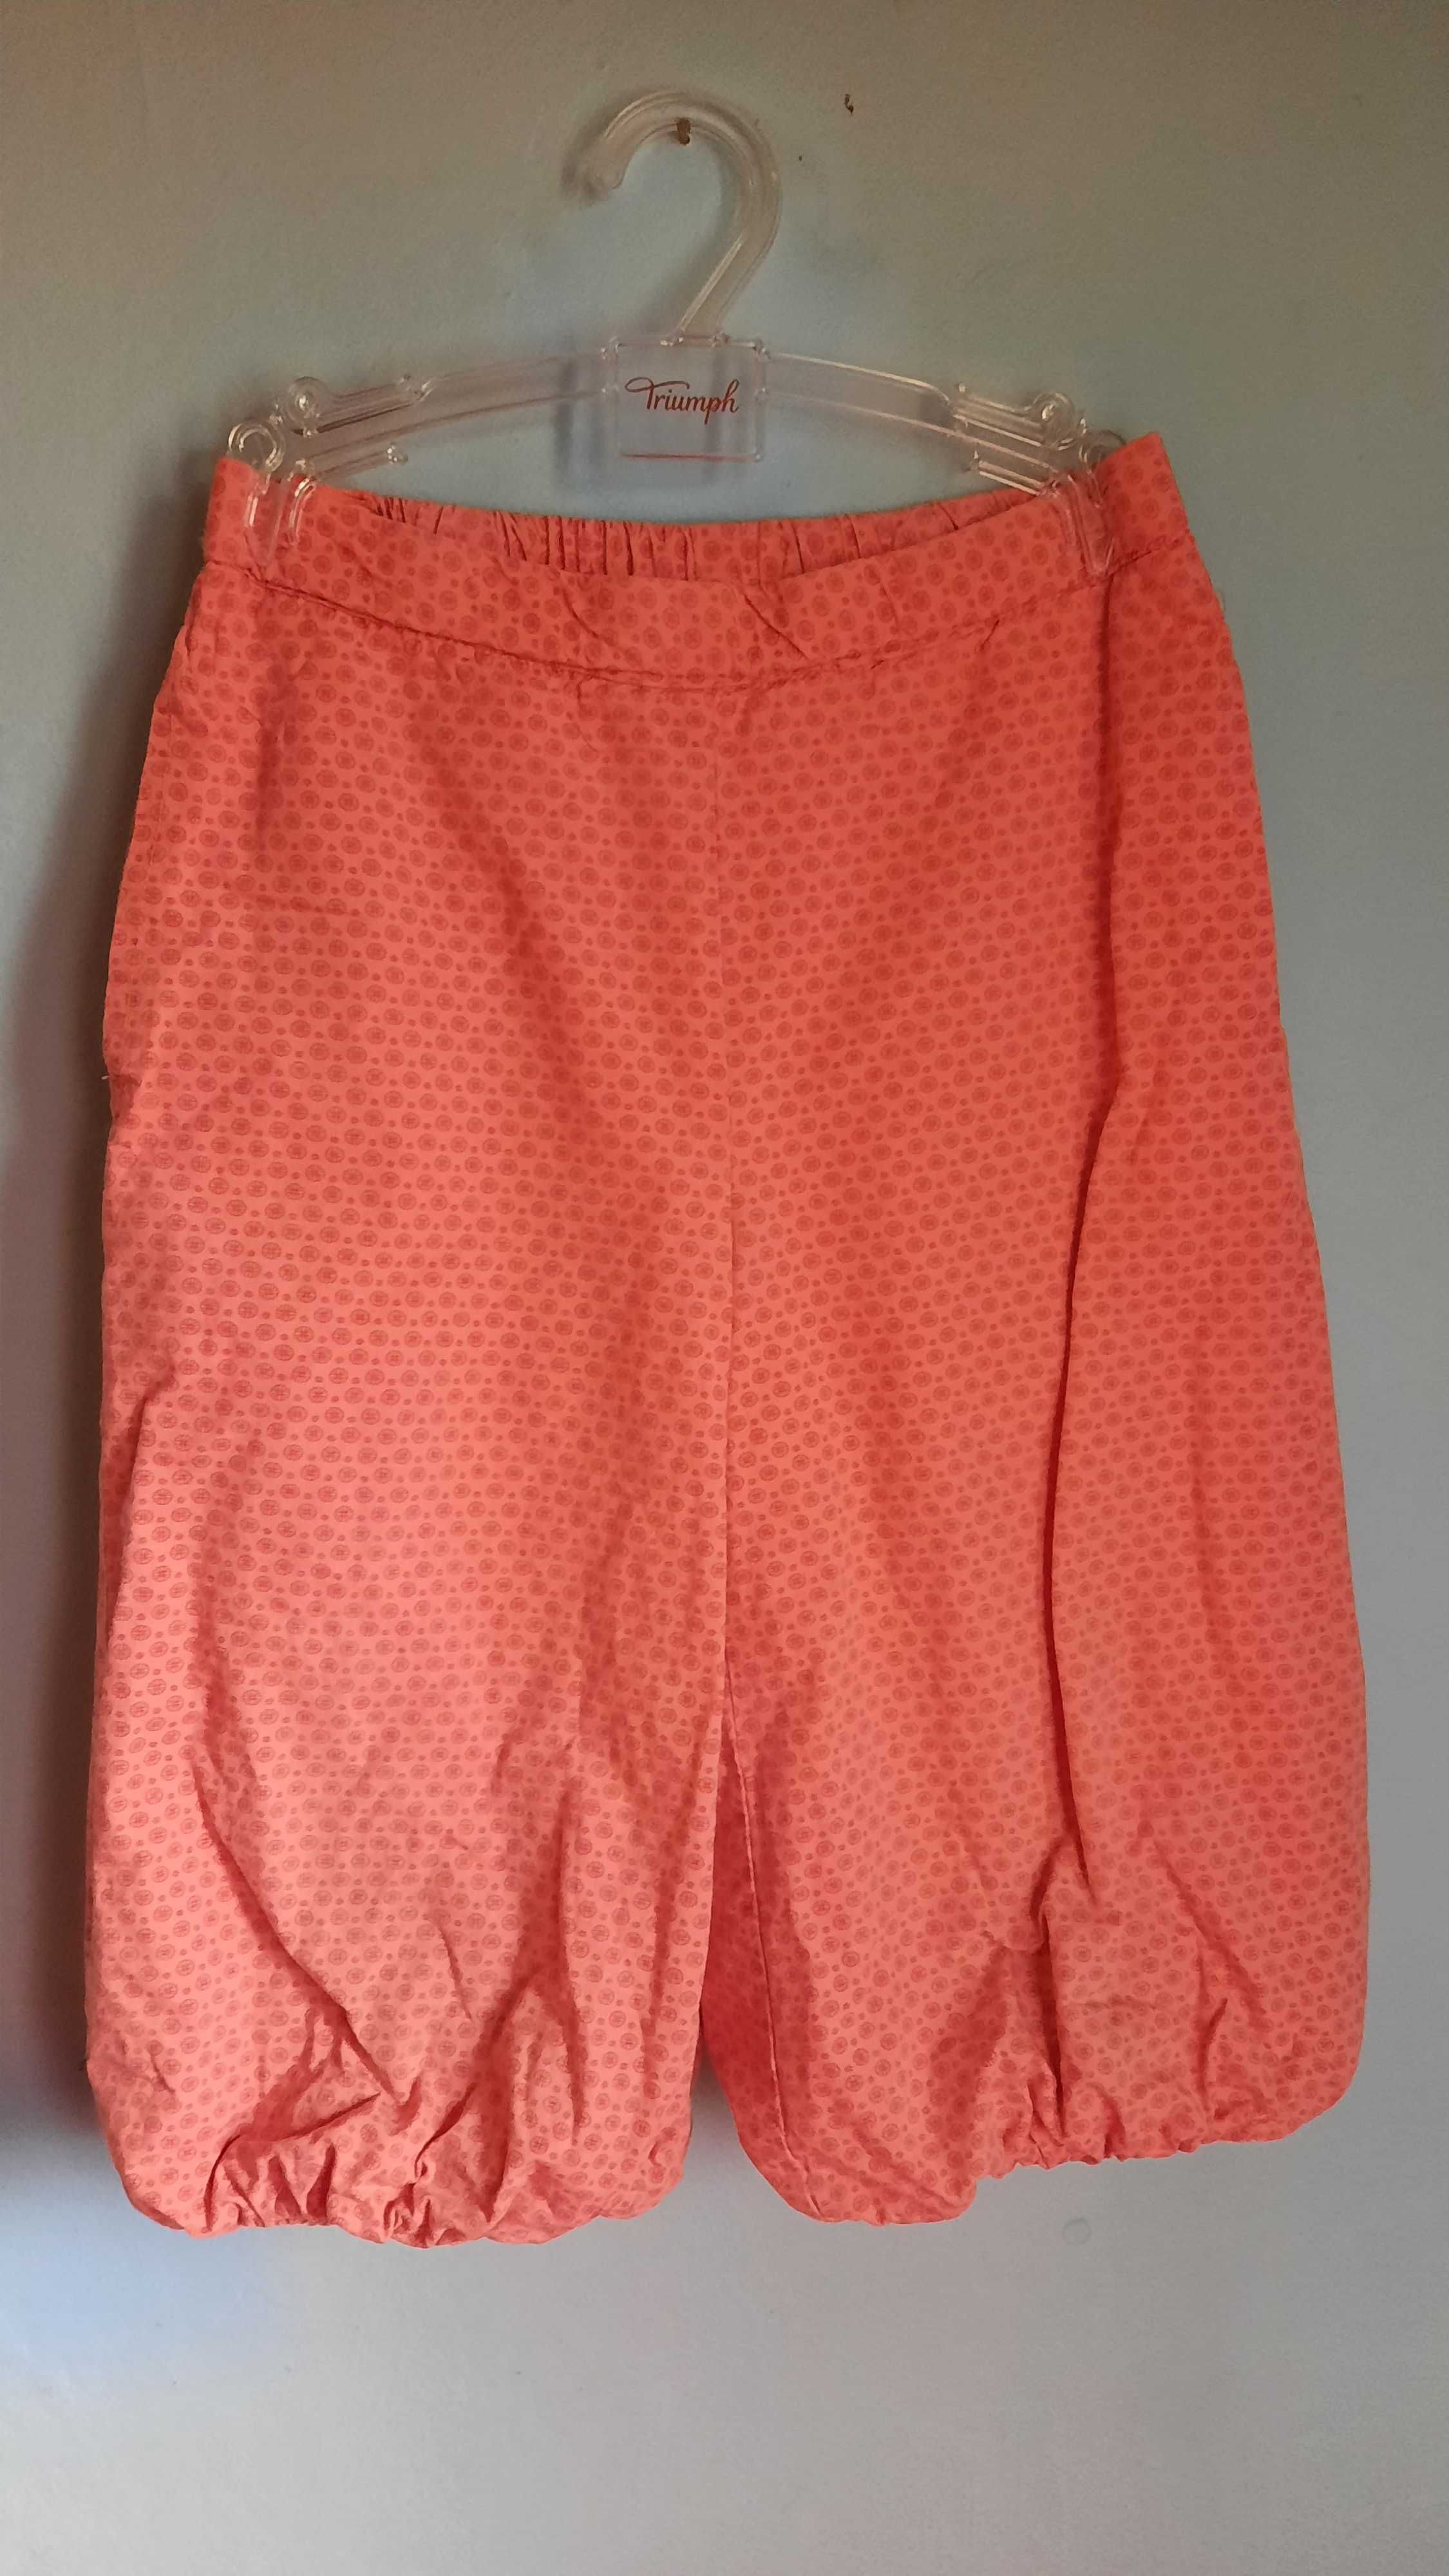 Три панталона на френската фирма Pomp de lux, размер 110/116 (7 -8 г.)